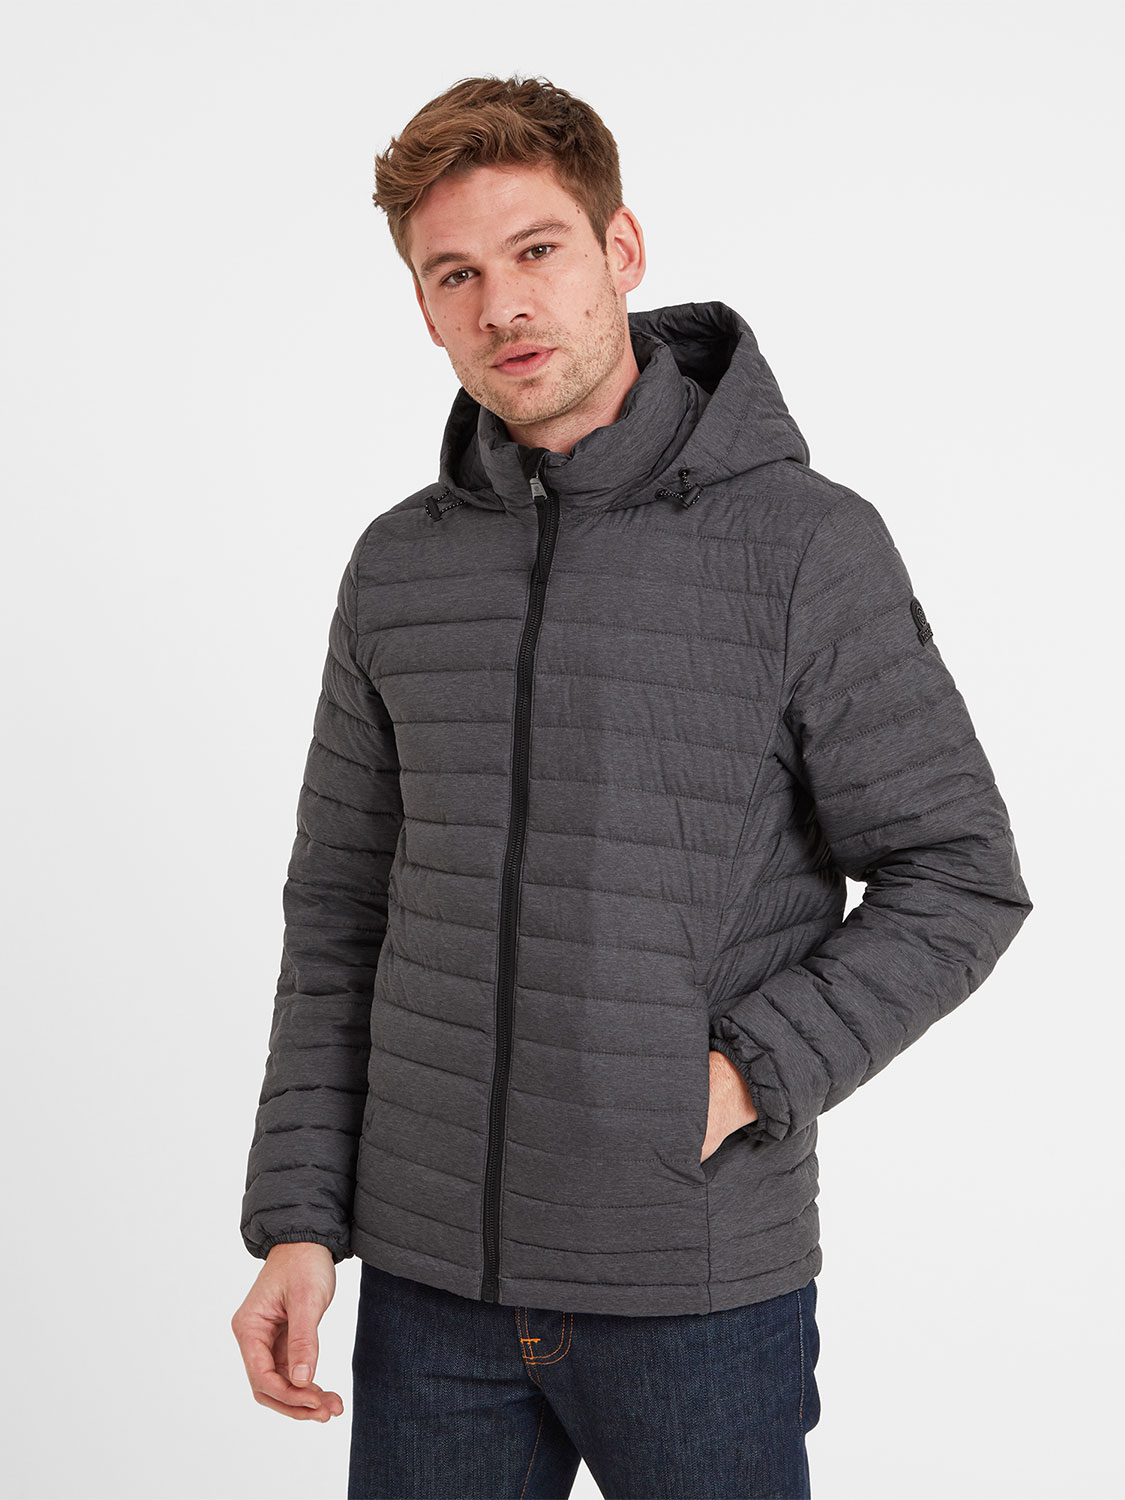 Bowburn Padded Jacket - Size: 6XL Men’s Grey Tog24